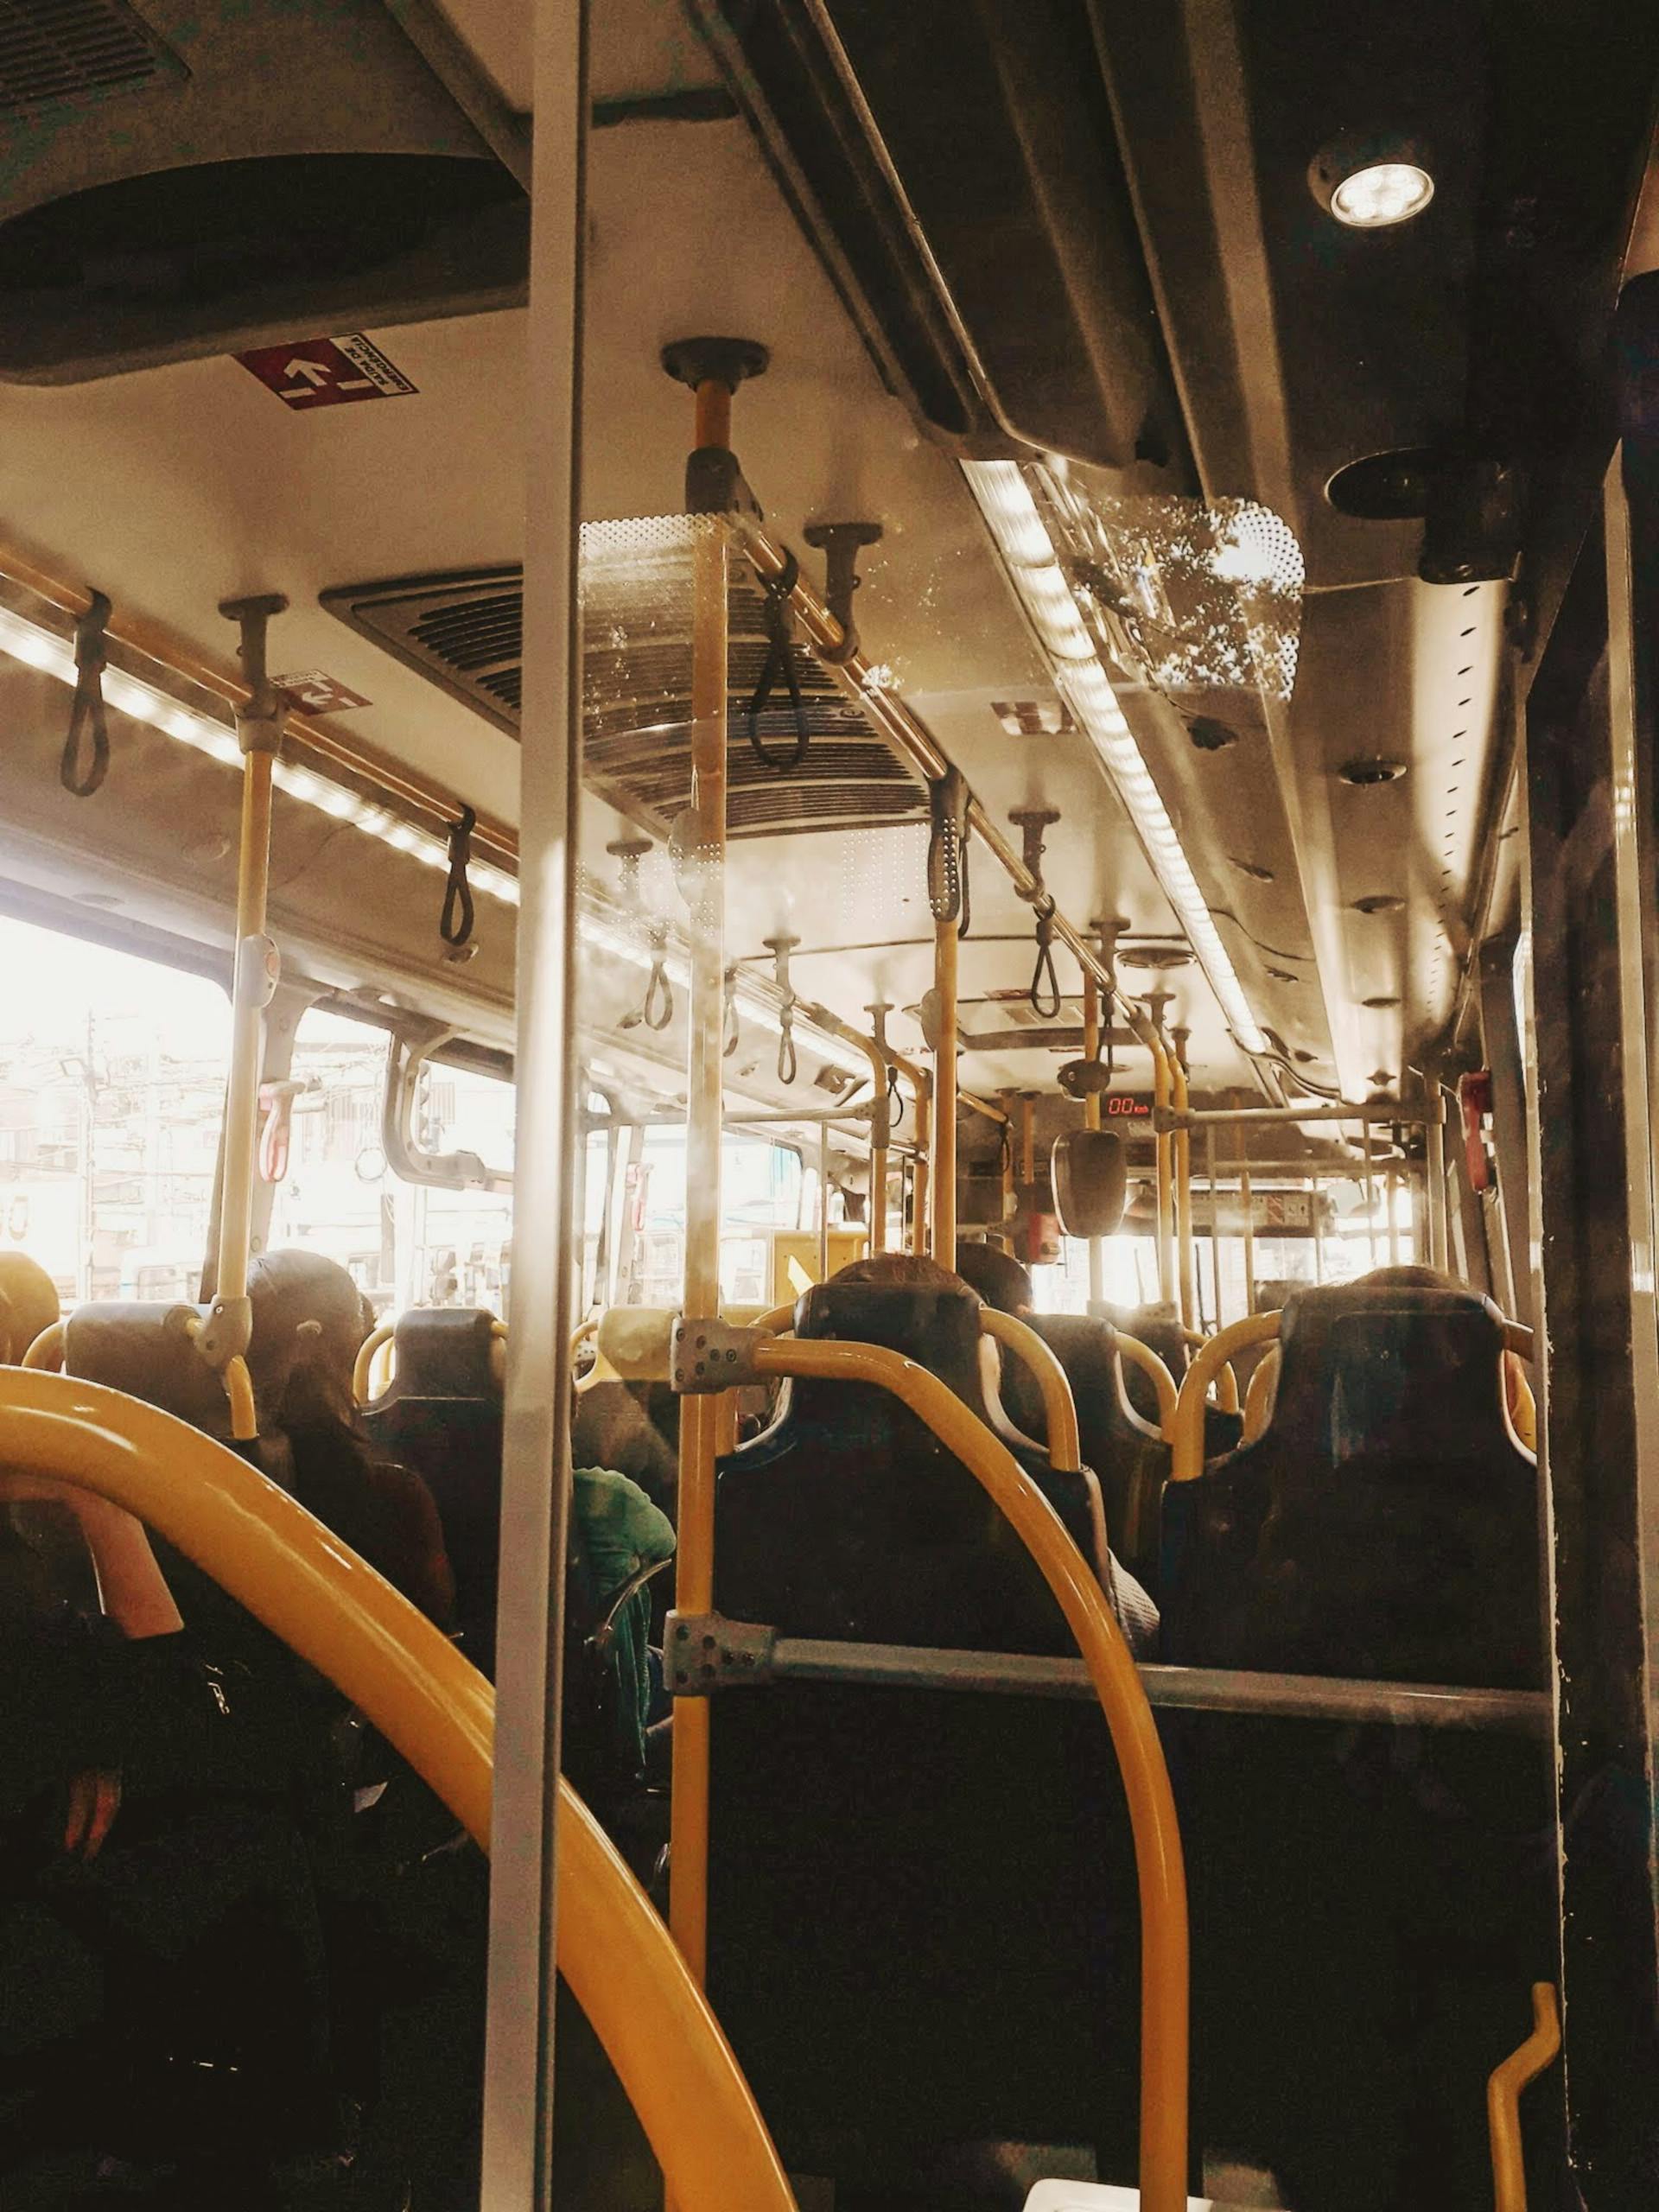 Gente dentro de un autobús | Foto: Pexels